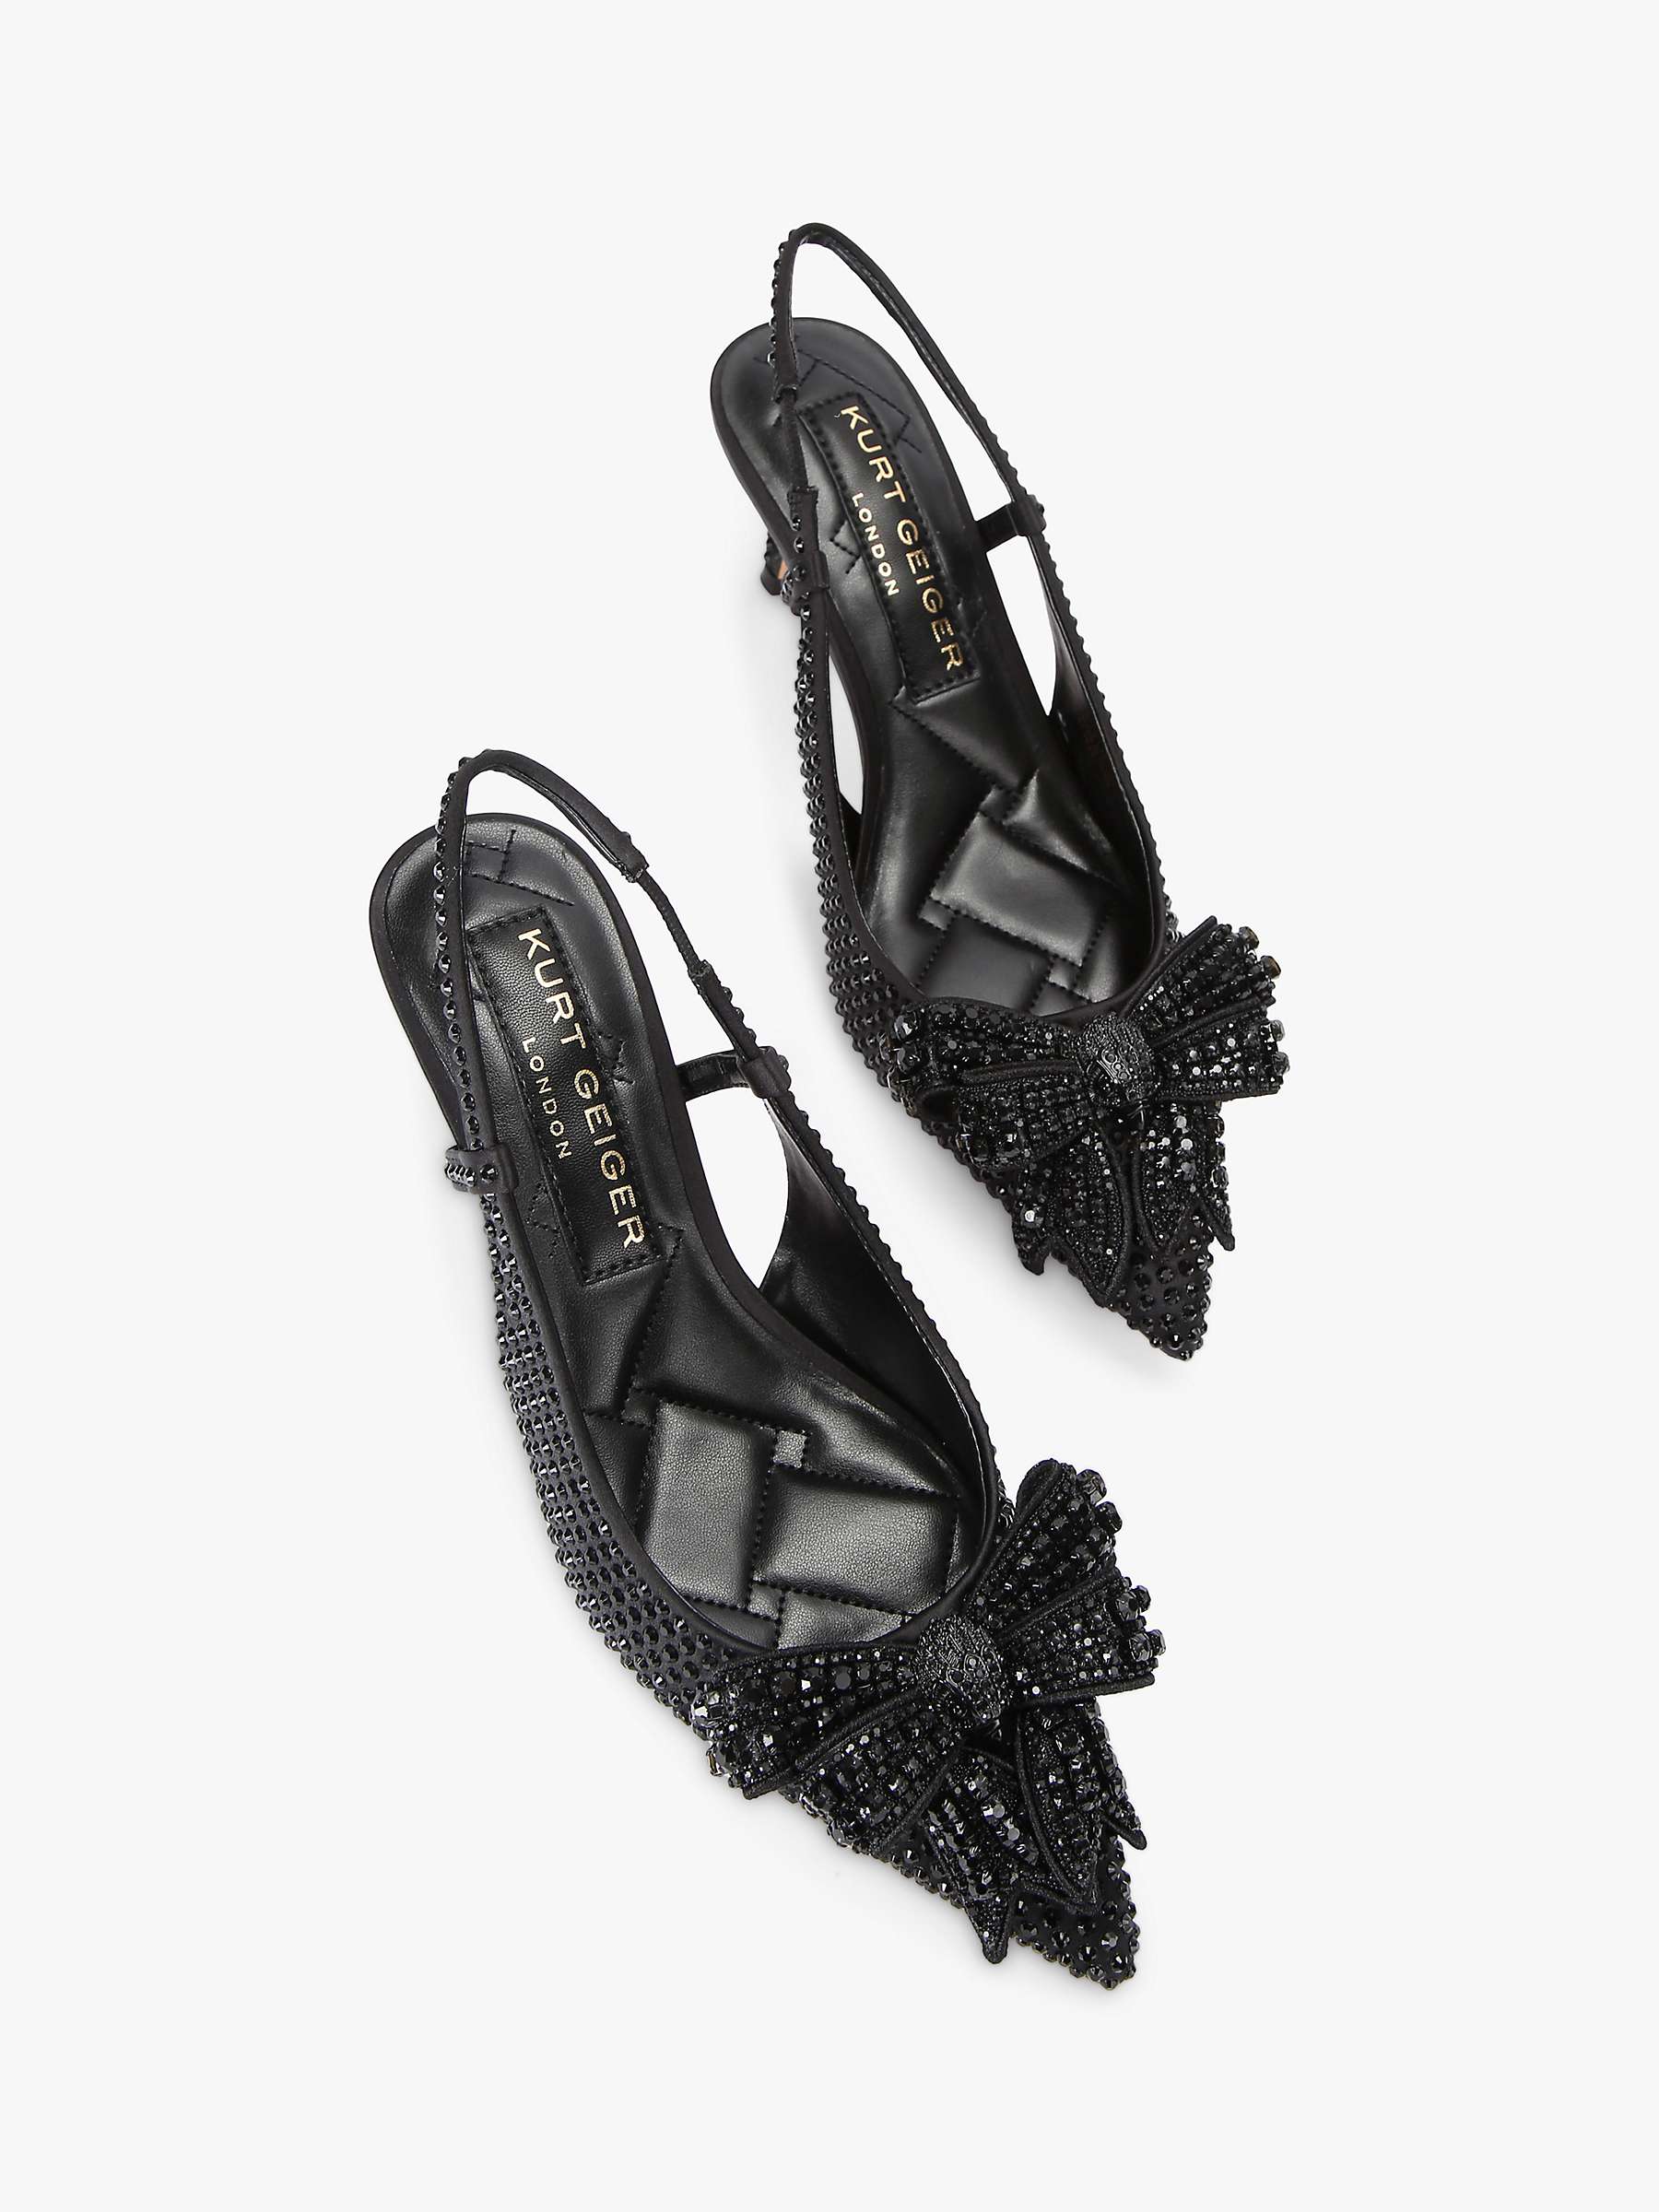 Buy Kurt Geiger London Belgravia Crystal Bow Embellished Slingback Court Shoes, Black Online at johnlewis.com